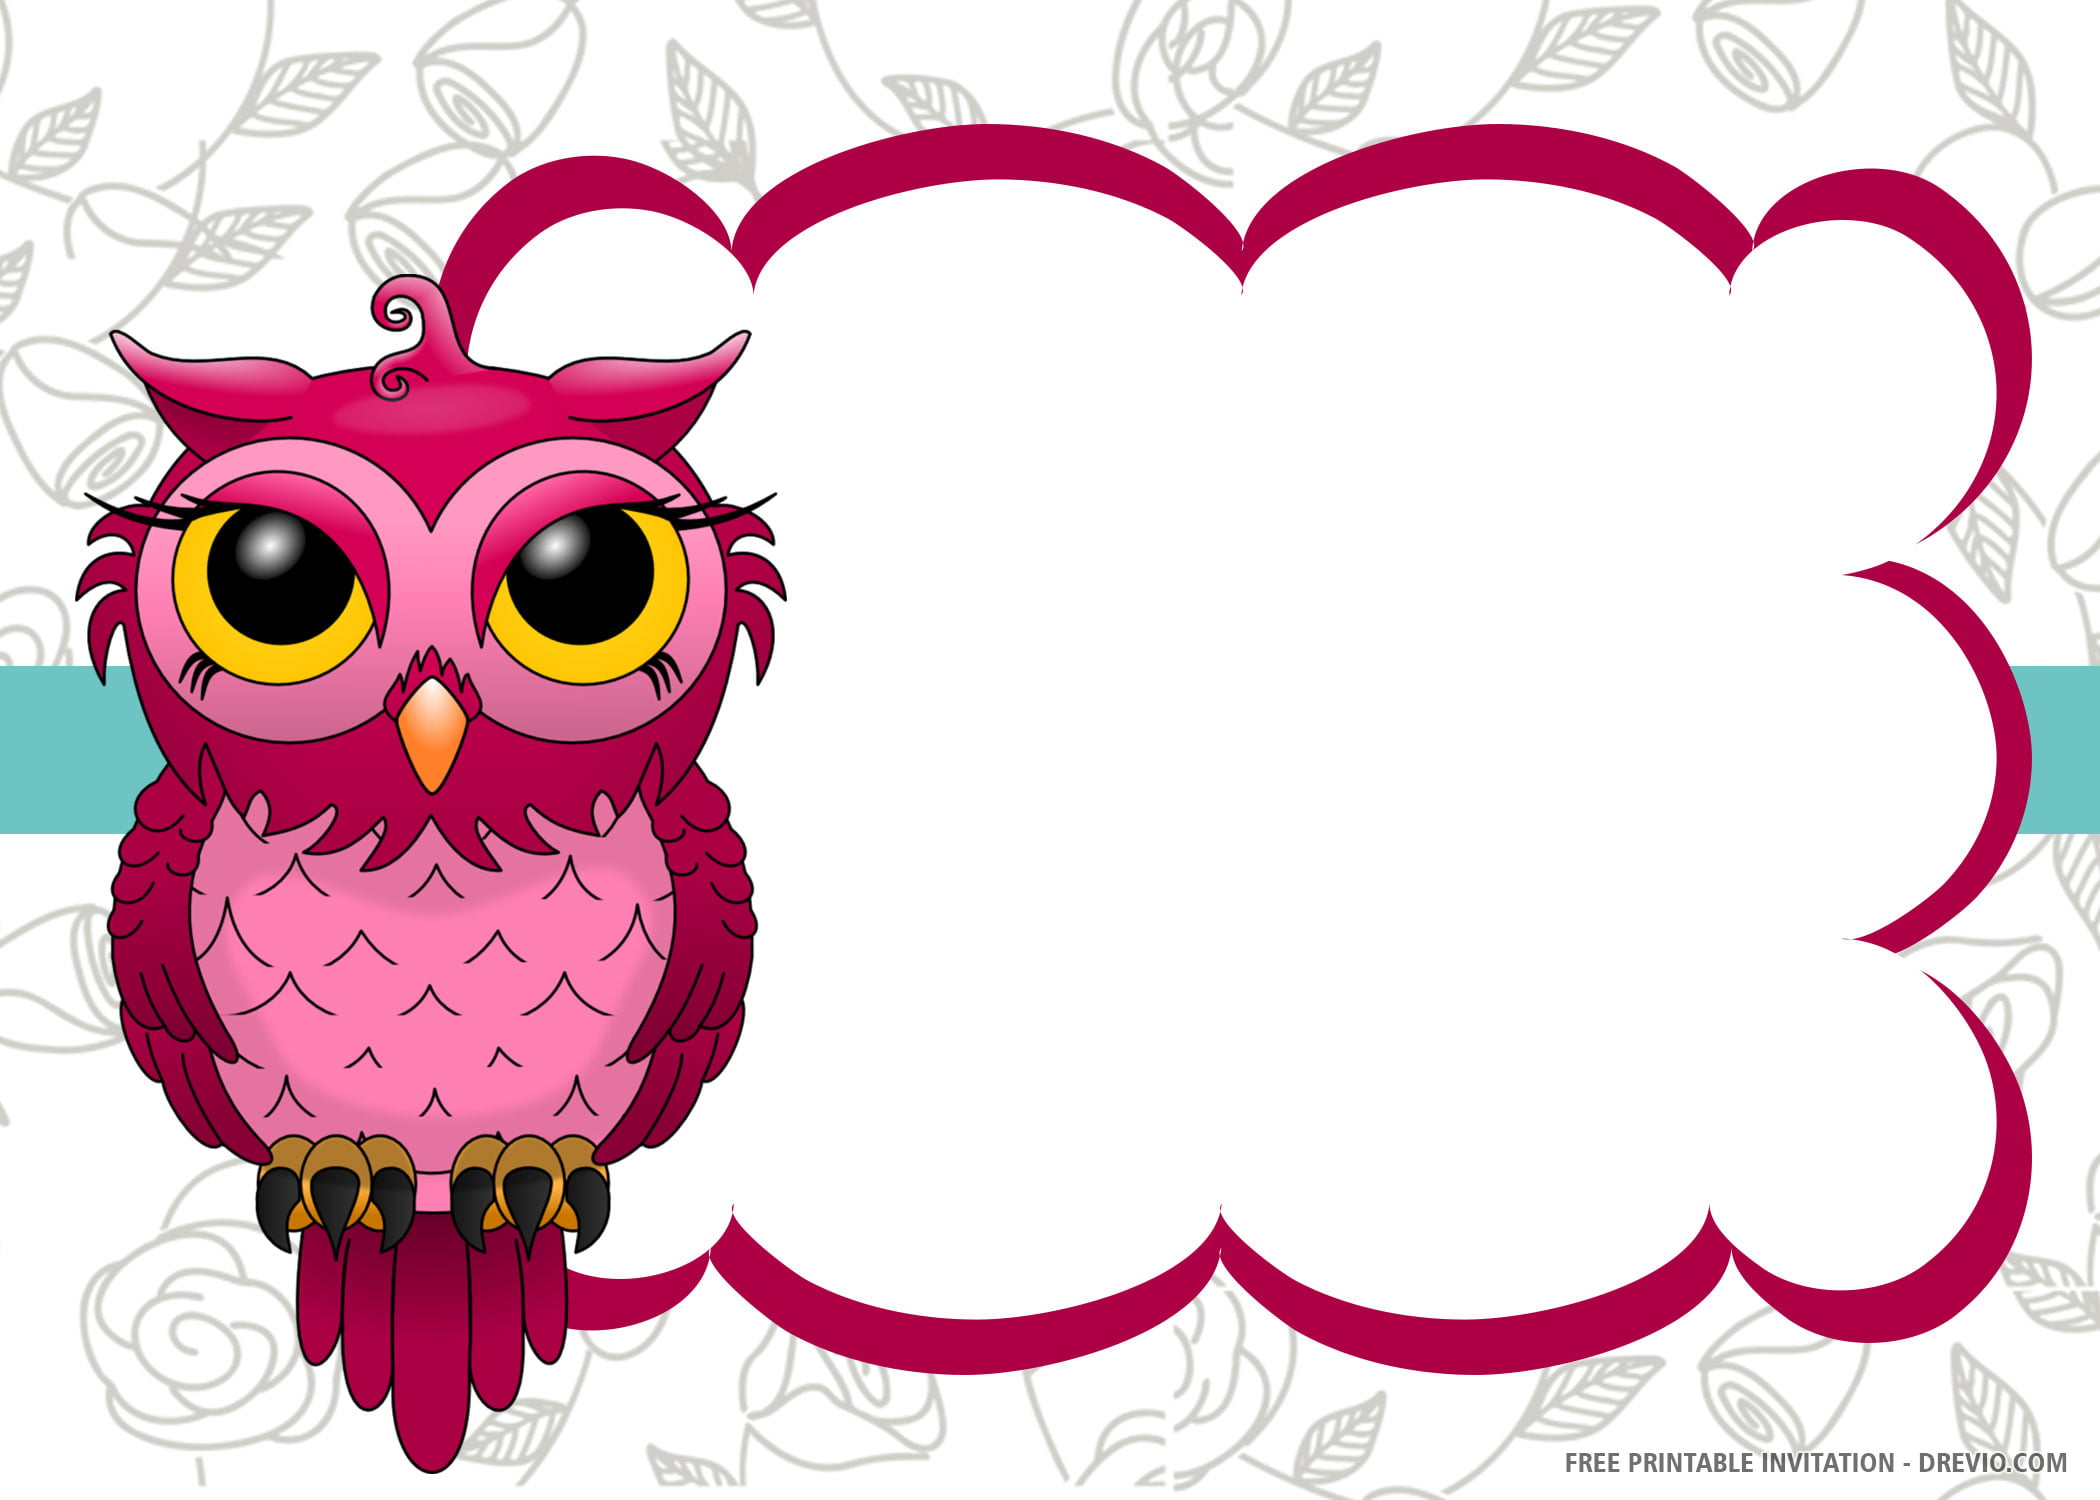 Chanson Lyrique Cest Ca De Download 26 Template Owl Name s Printable Free